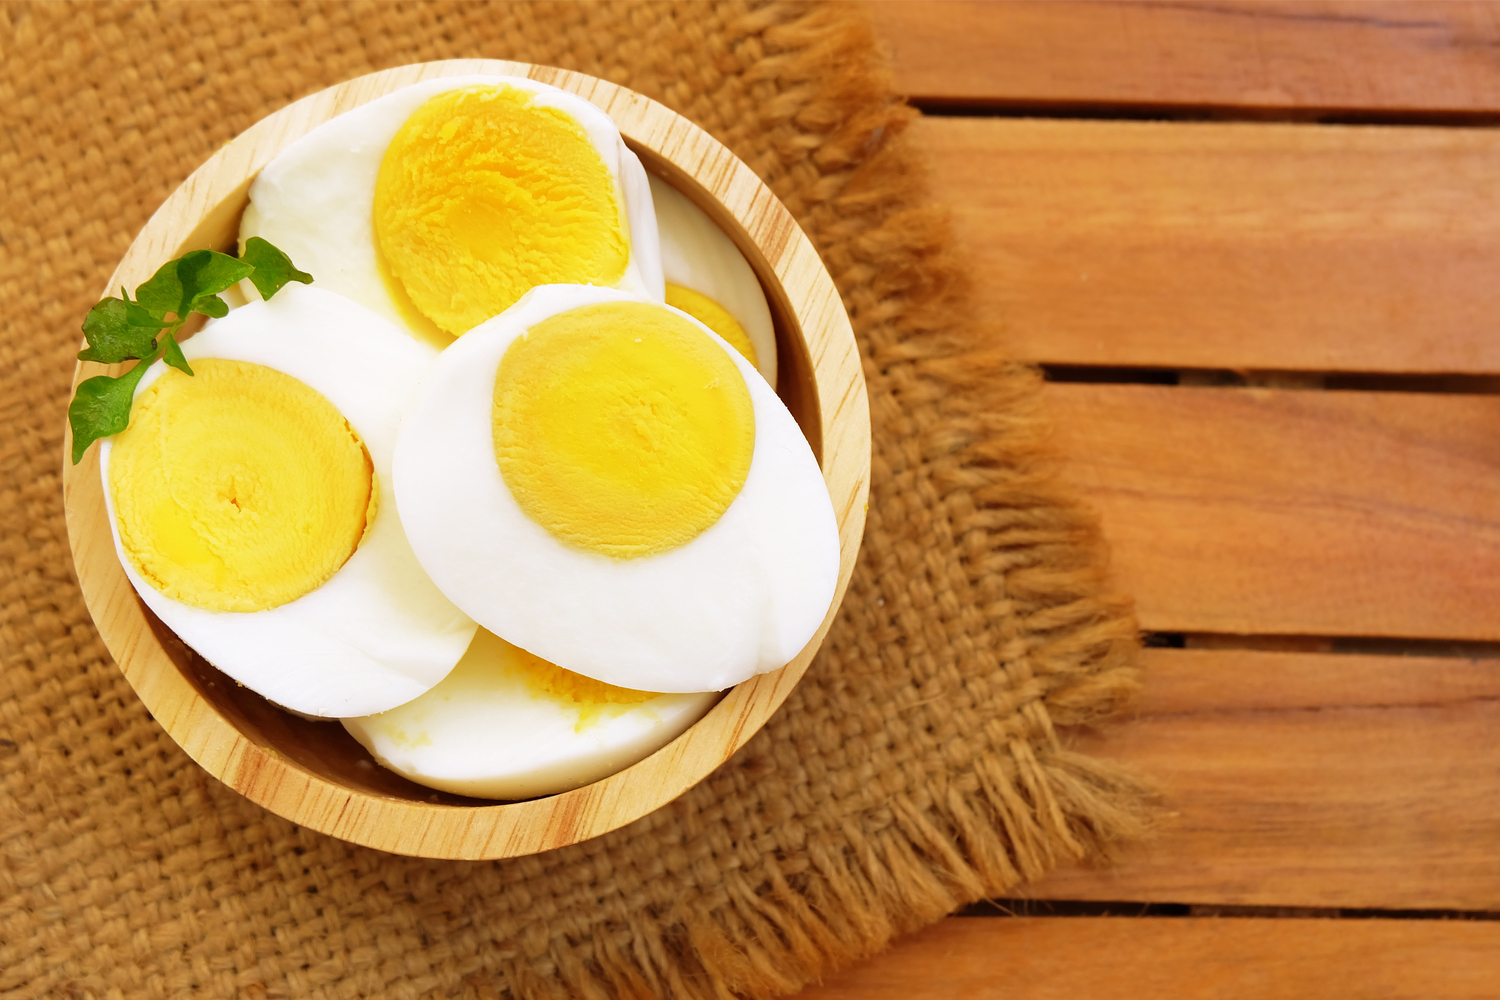 Huevos Frescos Hecho En Casa - Foto gratis en Pixabay - Pixabay